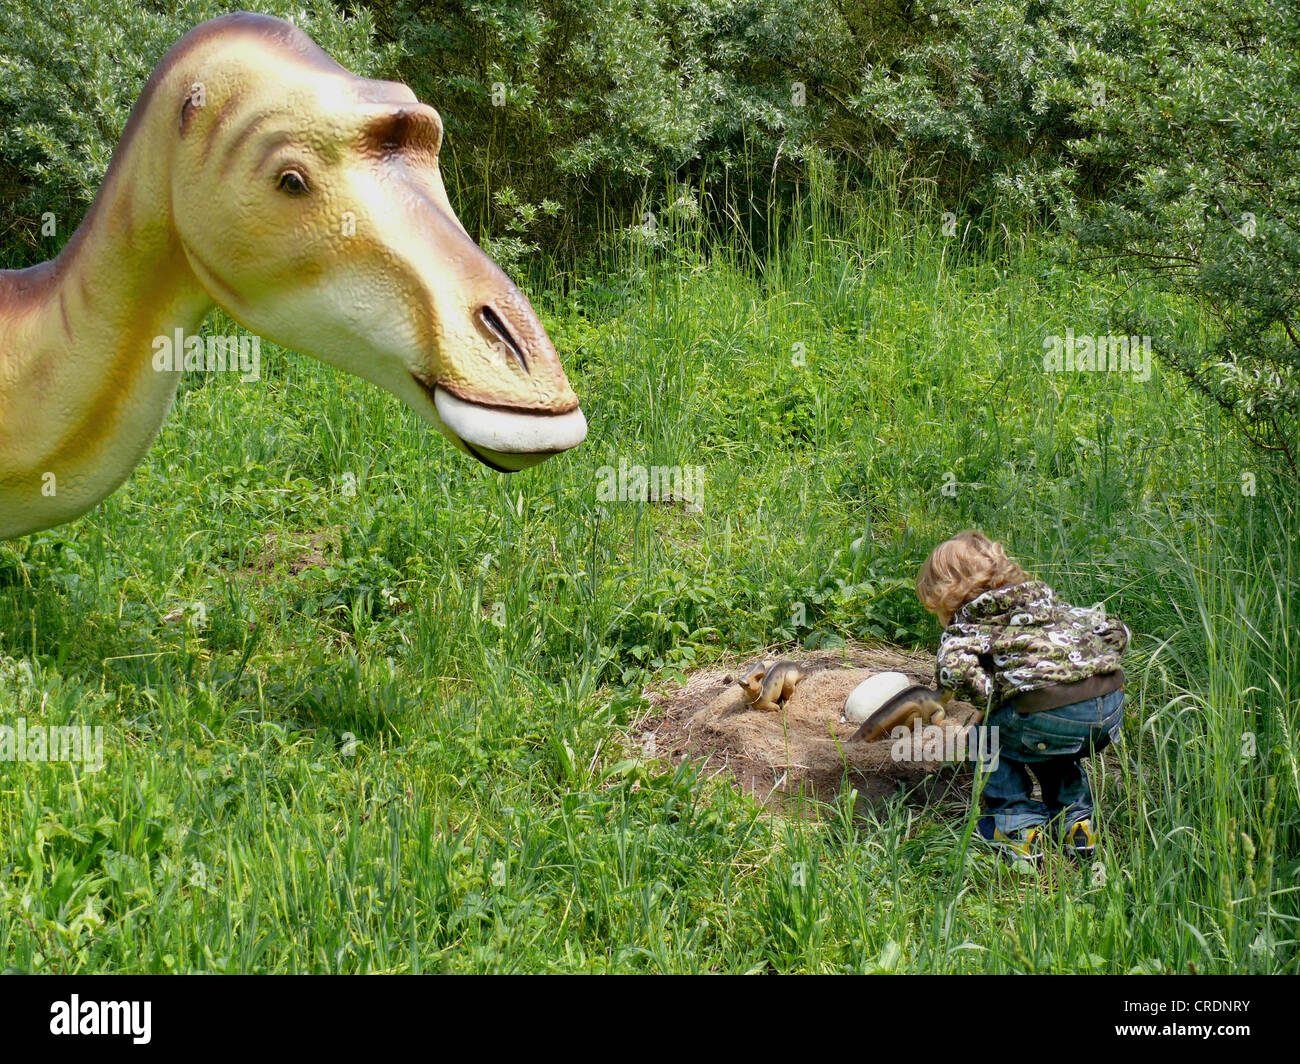 Edmontosaurus (Edmontosaurus), little boy inspecting a dinosaur's nest Stock Photo